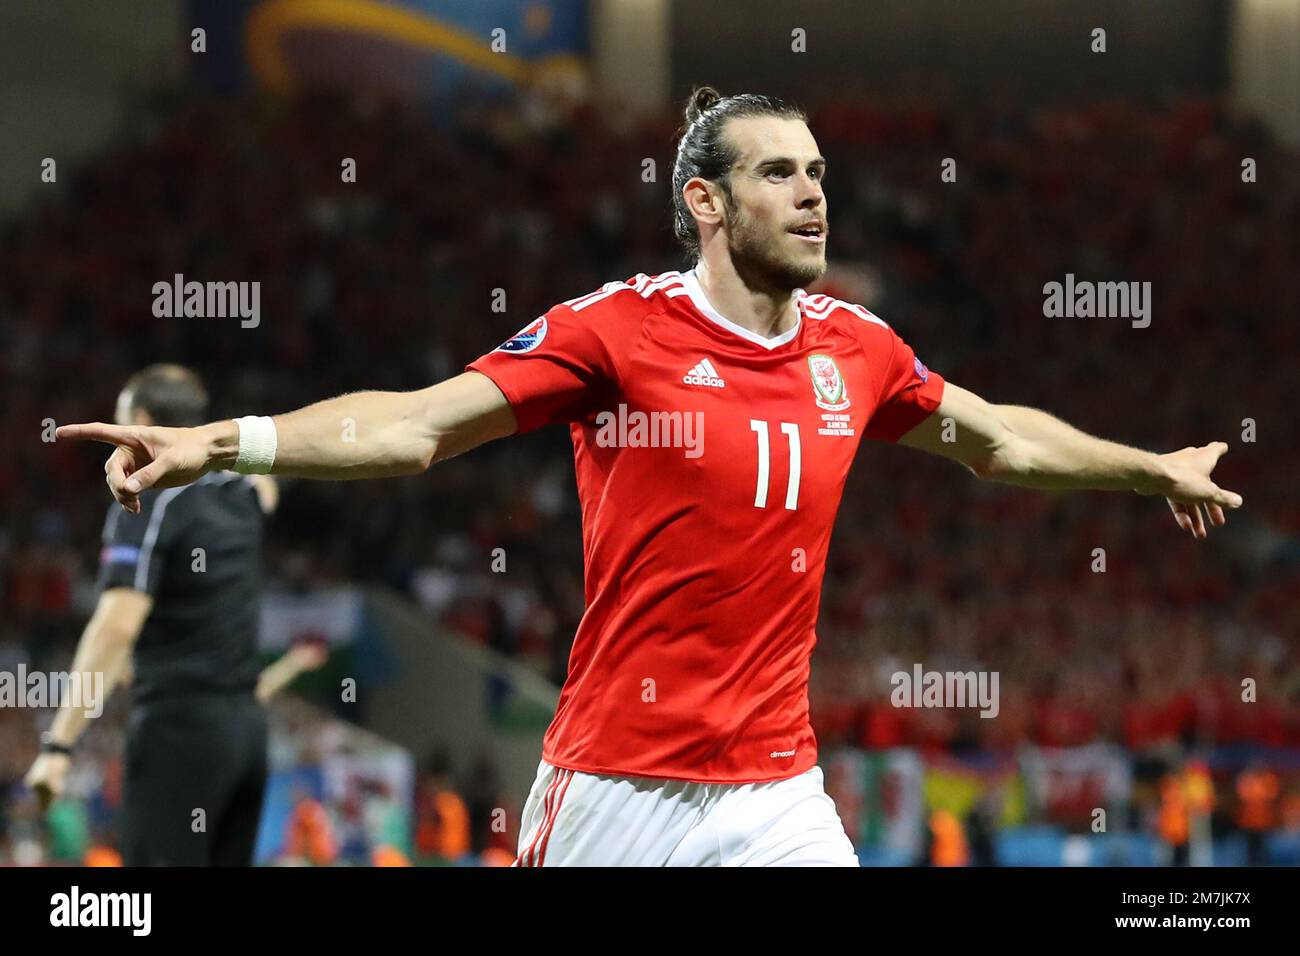 Photo du dossier datée du 20-06-2016 de Gareth Bale du pays de Galles. Rob  page, le directeur du pays de Galles, a déclaré à Gareth Bale que c'était  le bon moment pour